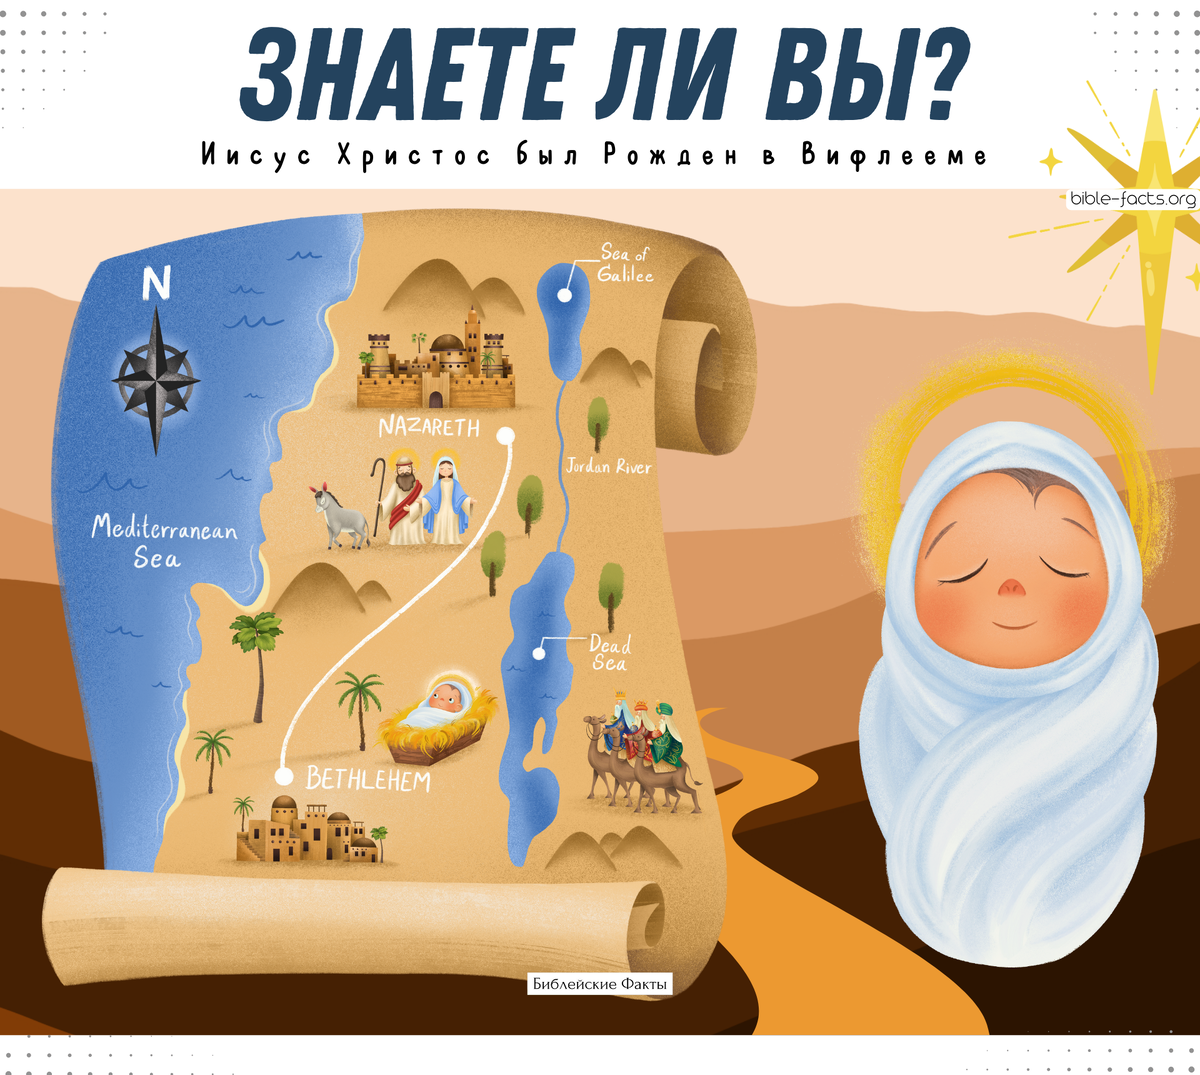 Знаете ли вы?

Несмотря на то, что Иисус был Рожден в Вифлееме, он не был Его родным городом. Мария и Иосиф пришли в Вифлеем, чтобы зарегистрироваться в переписи.